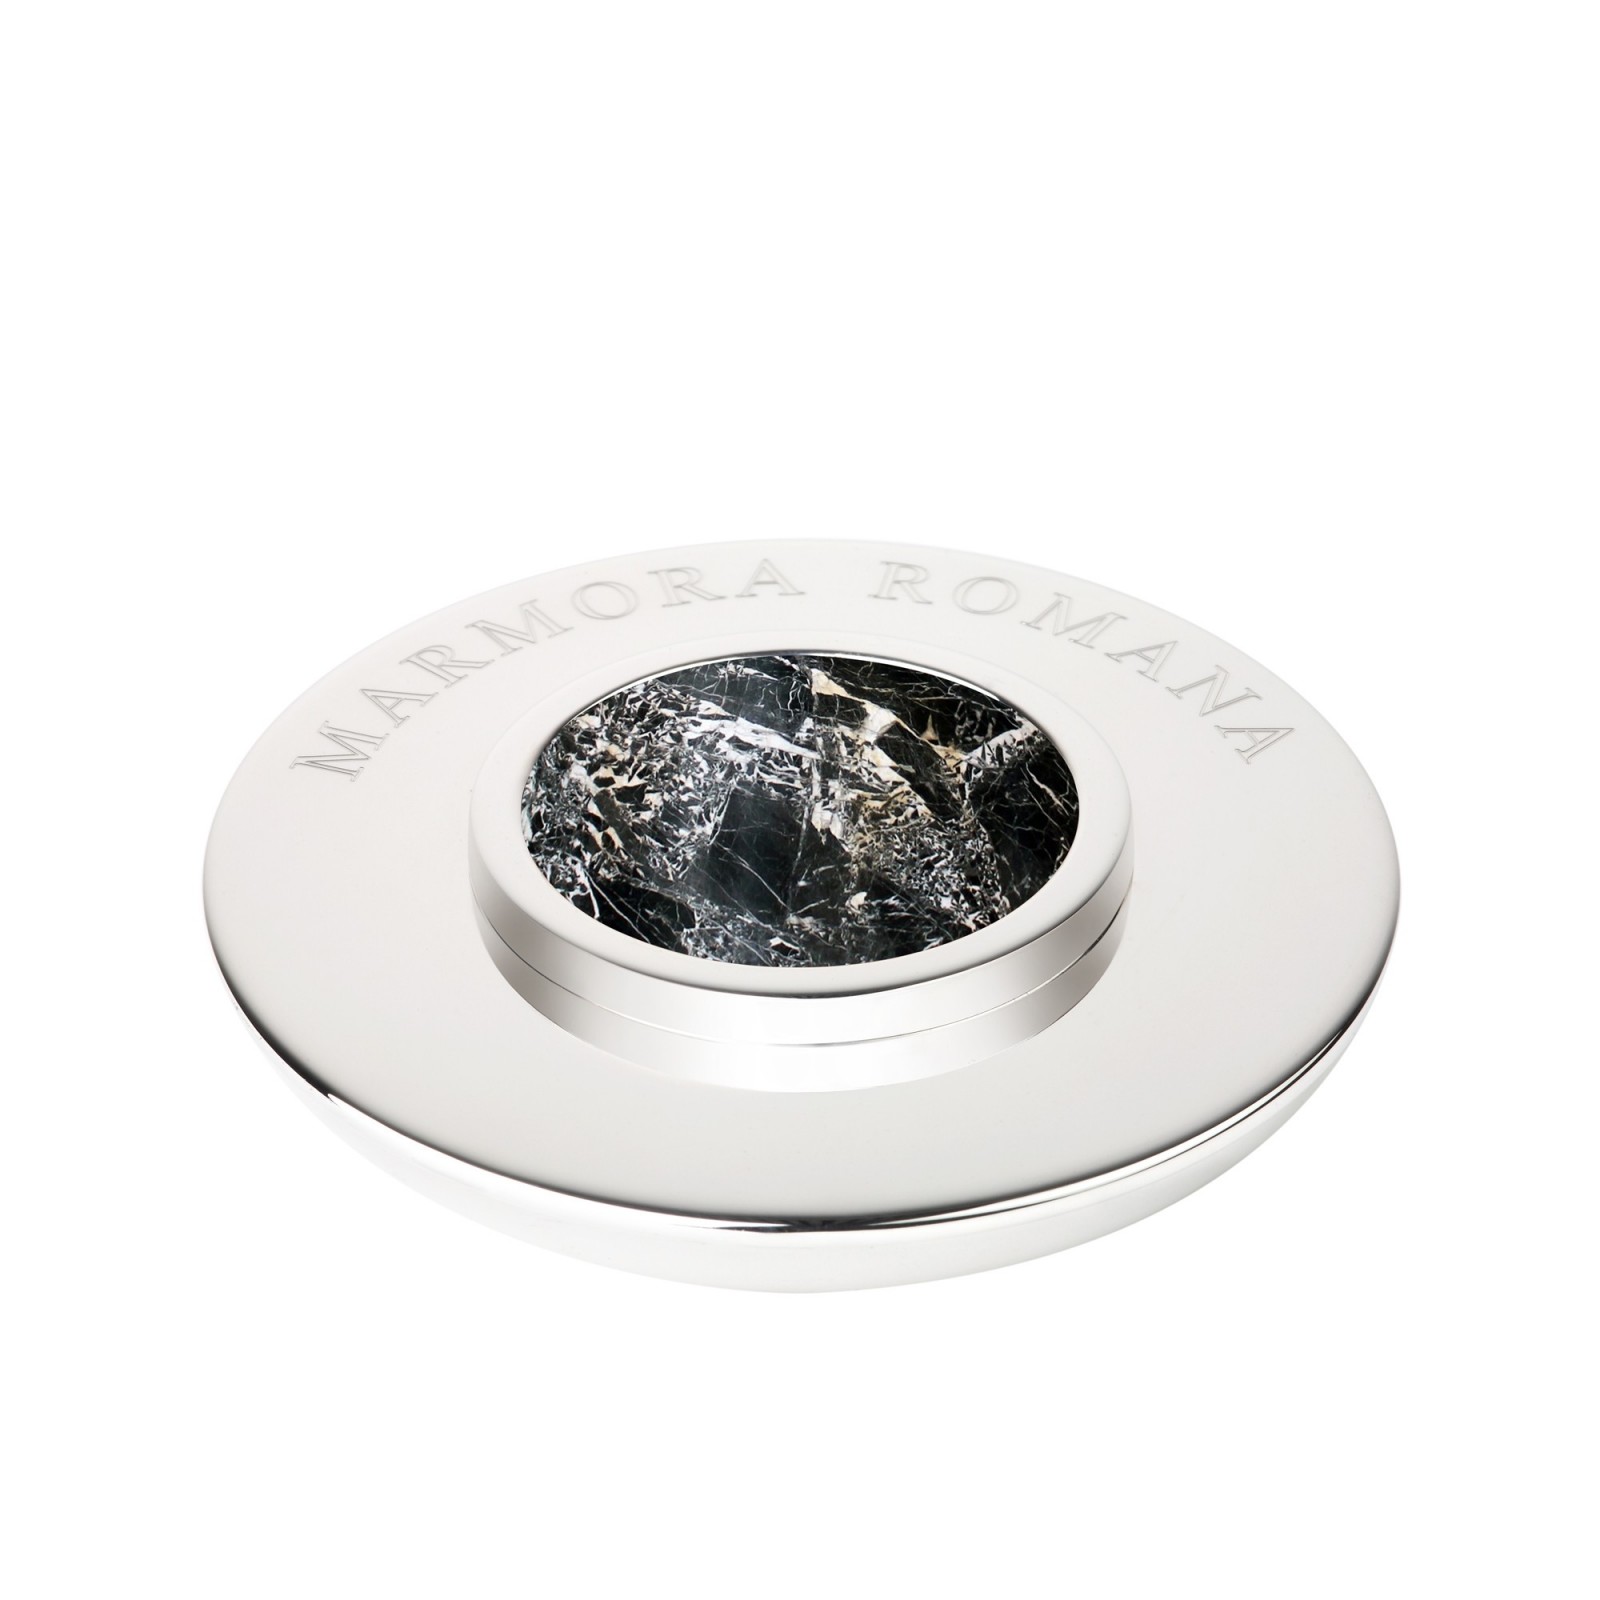 Fermacarte argento con marmo  - Valadier shop online